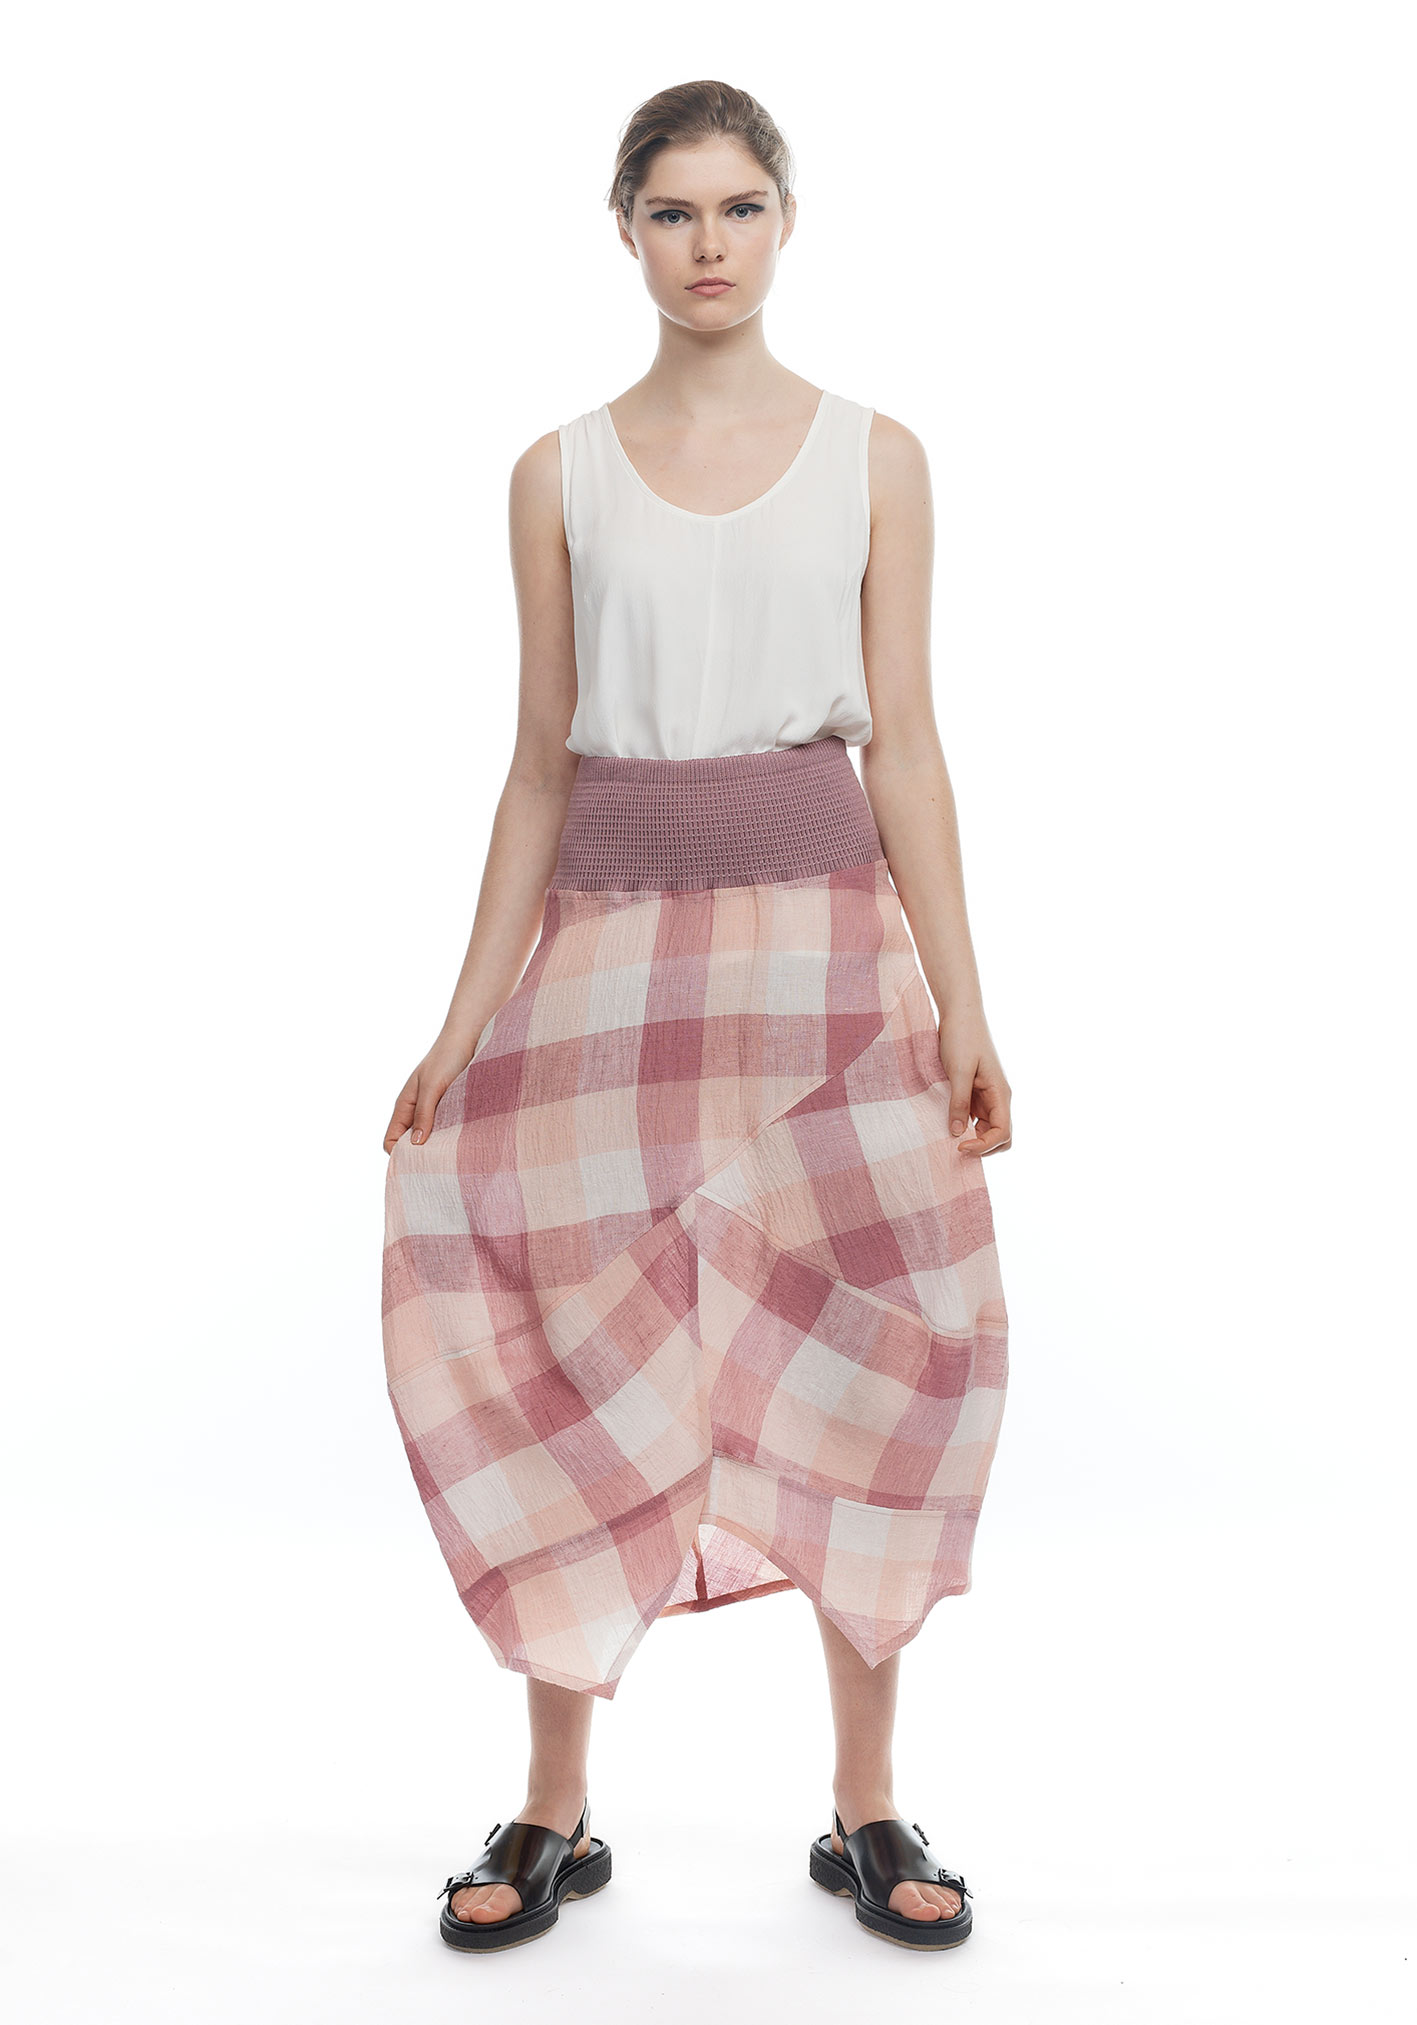 buy the latest Criss Cross Skirt online